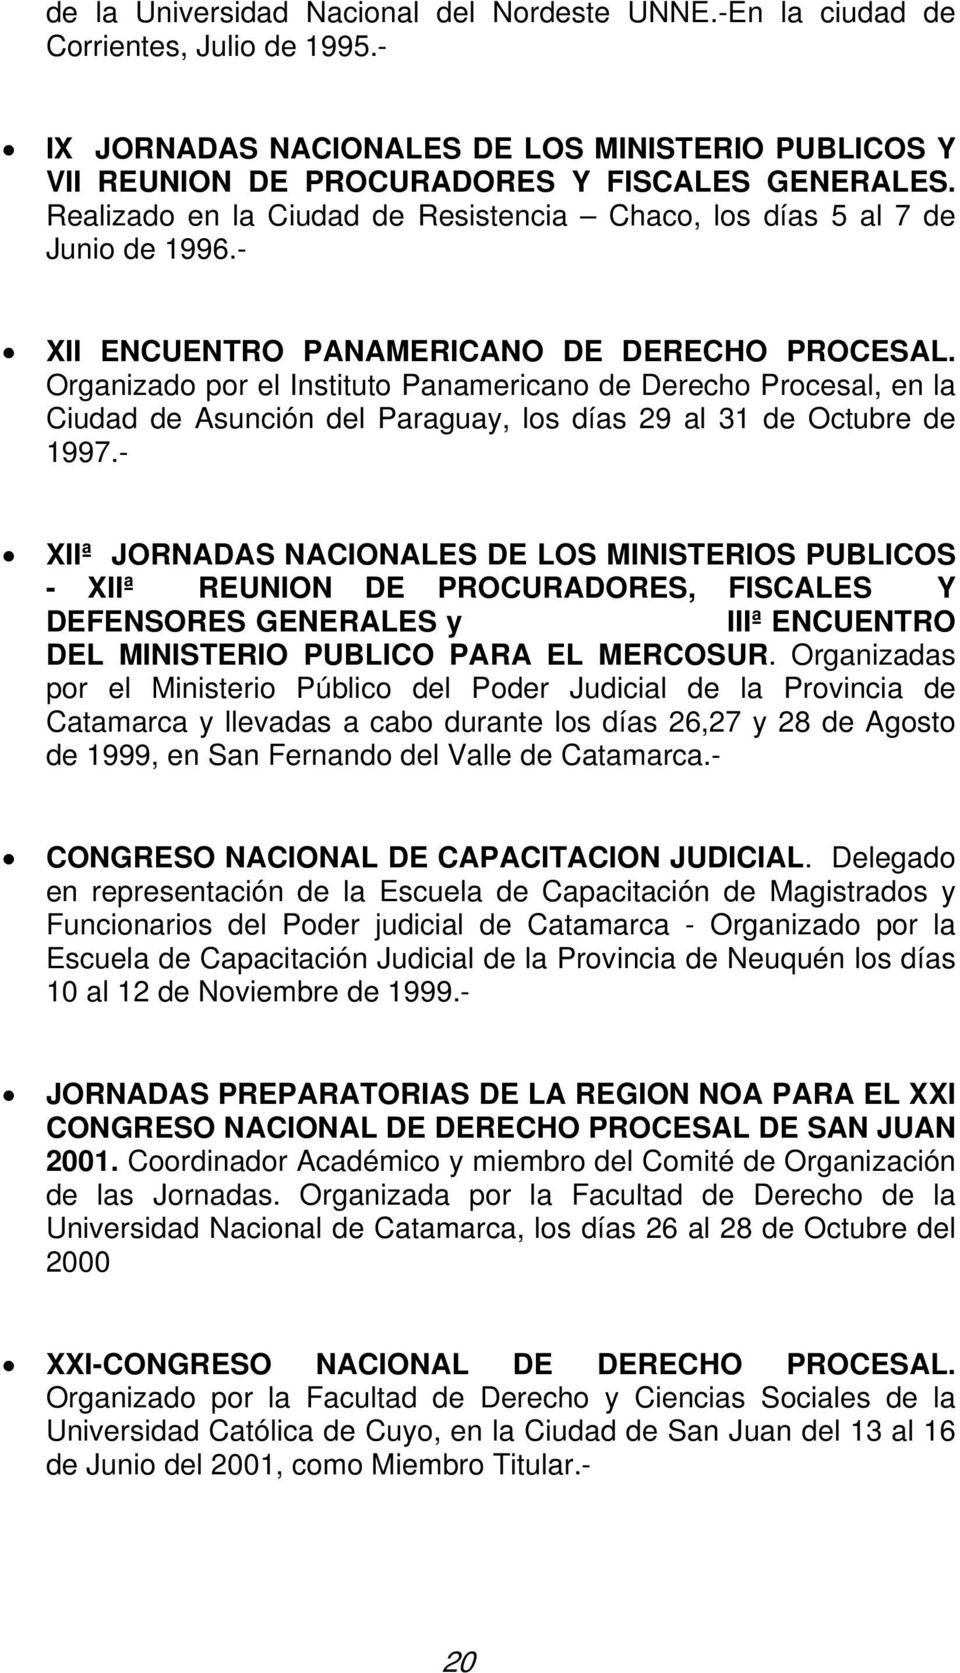 Organizado por el Instituto Panamericano de Derecho Procesal, en la Ciudad de Asunción del Paraguay, los días 29 al 31 de Octubre de 1997.